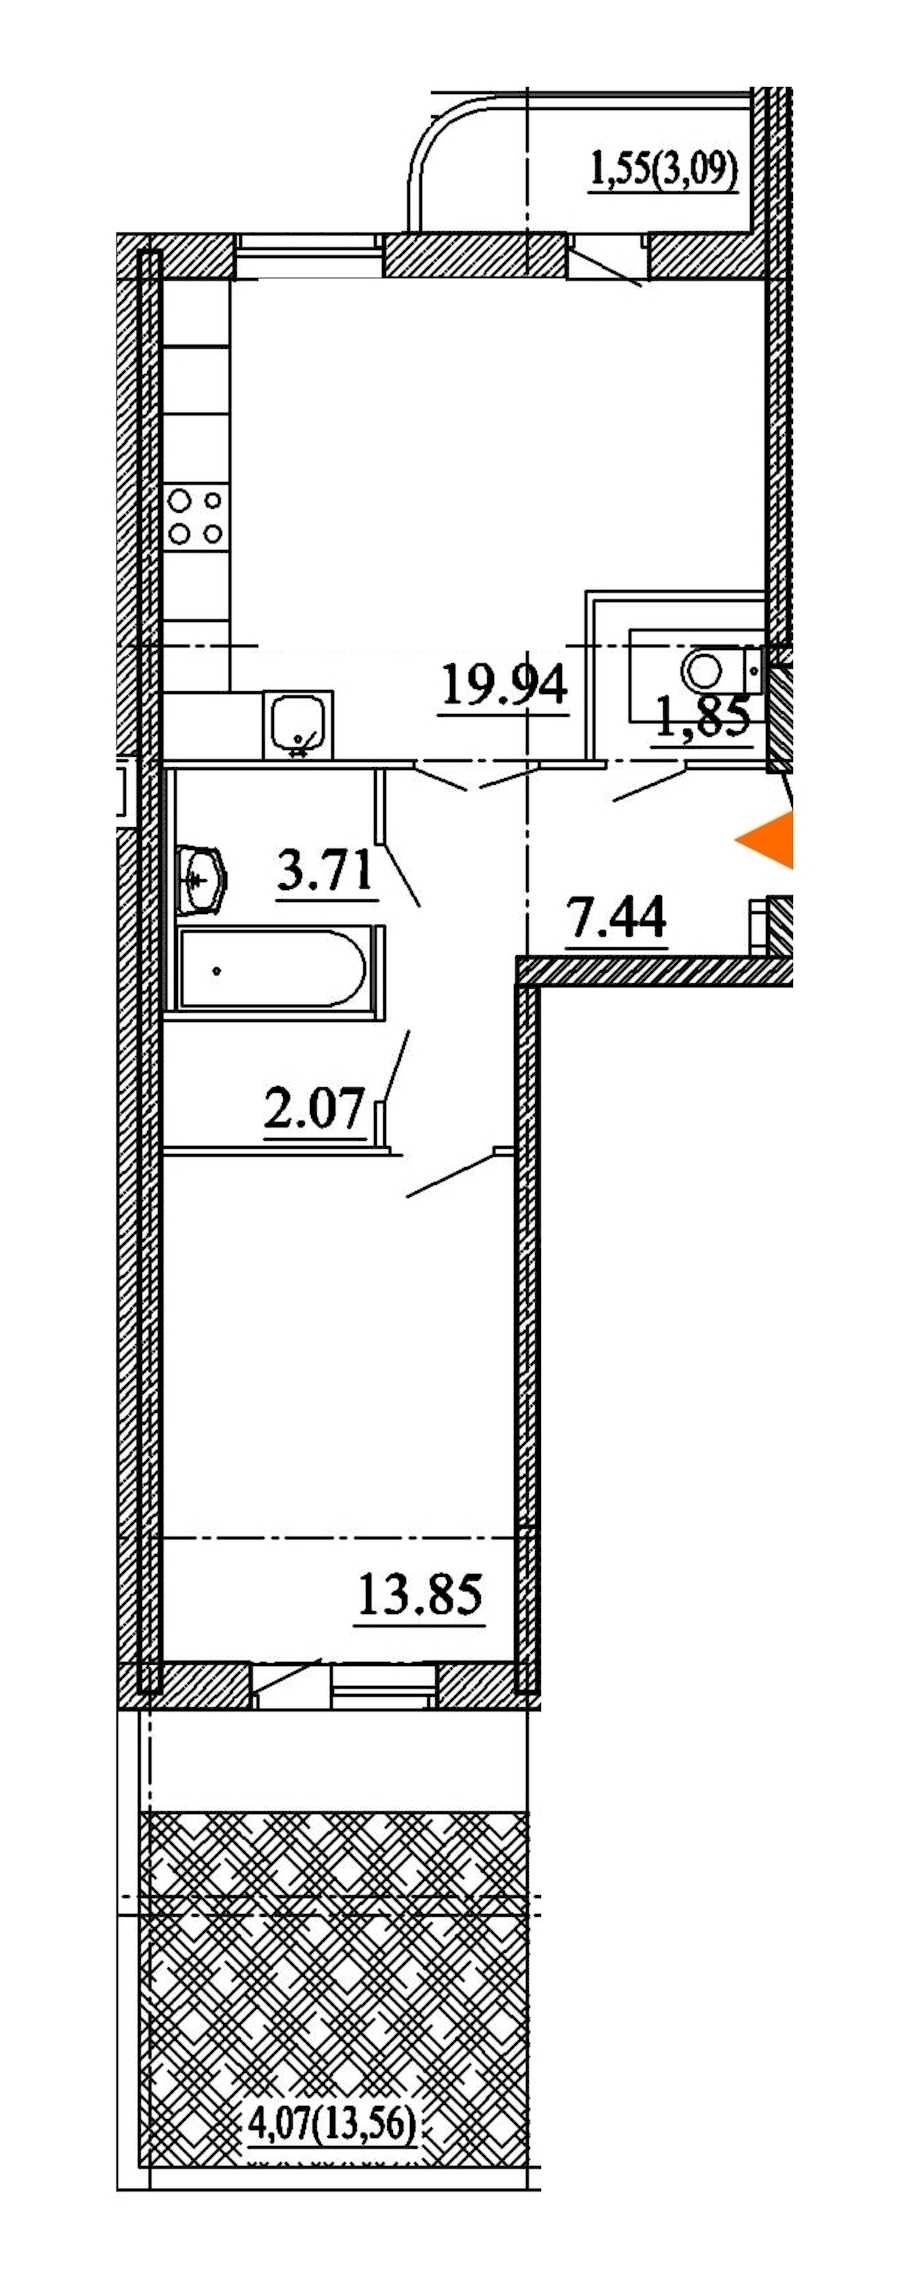 Однокомнатная квартира в : площадь 54.48 м2 , этаж: 1 – купить в Санкт-Петербурге